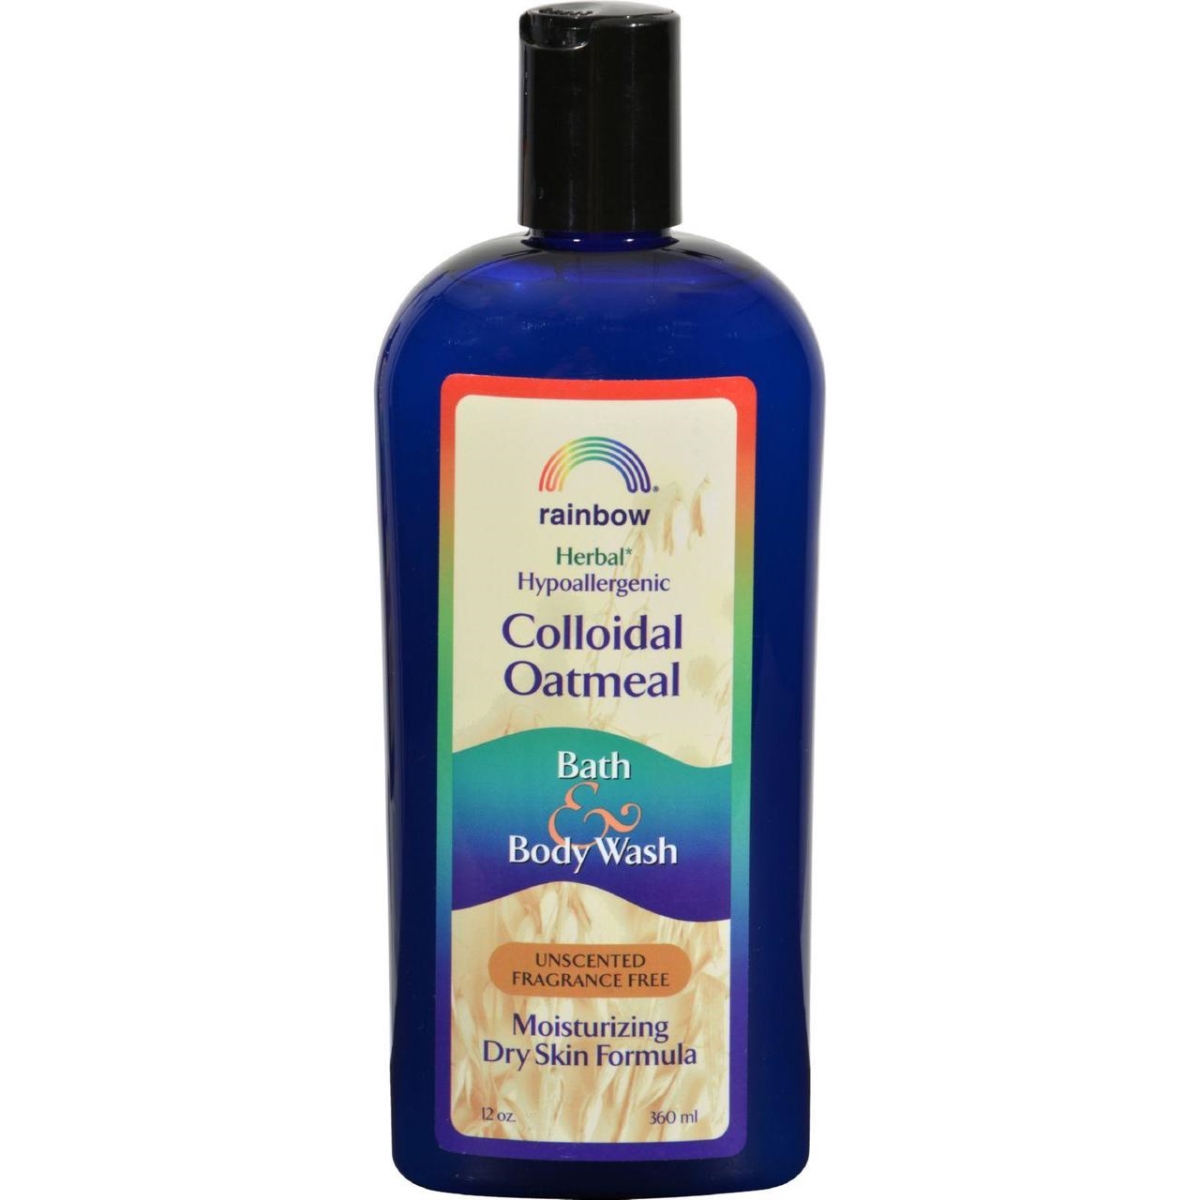 Hg0581819 12 Oz Colloidal Oatmeal Bath & Body Wash - Fragrance Free